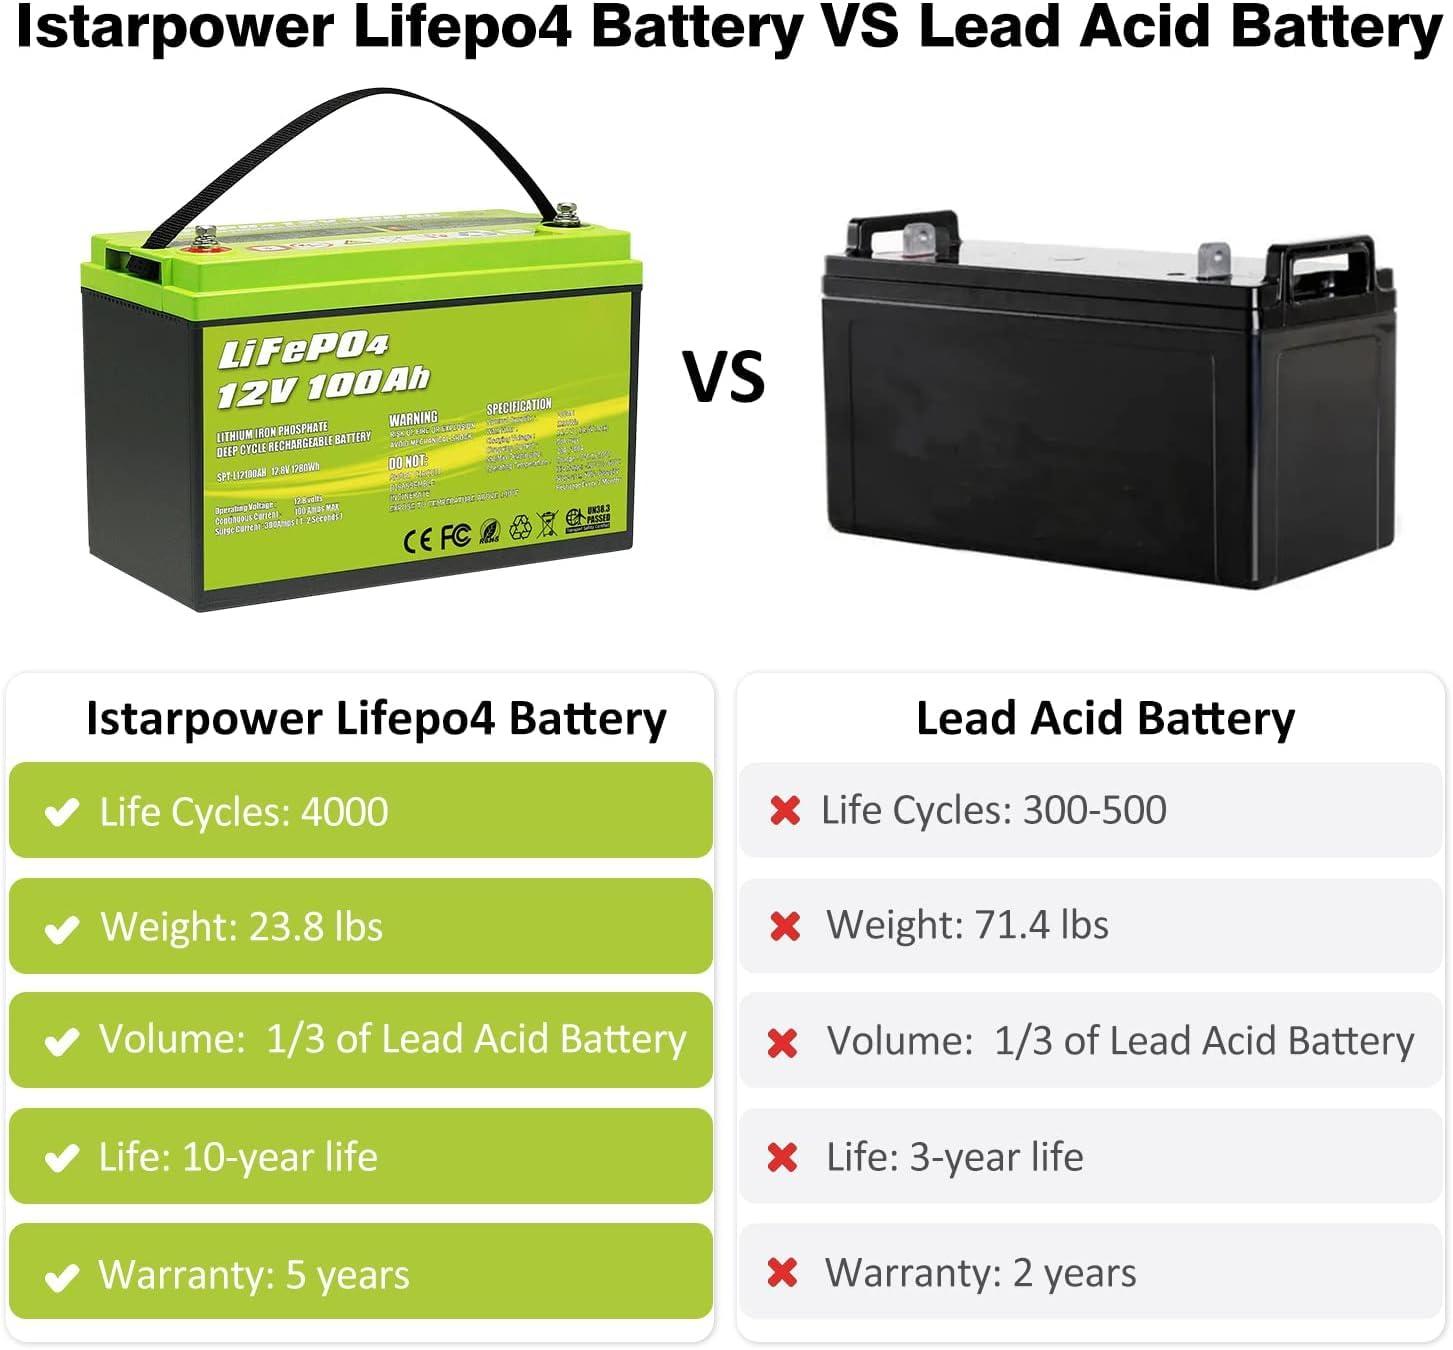 Batería de litio de ciclo profundo LiFePO4 de 12V 100Ah 